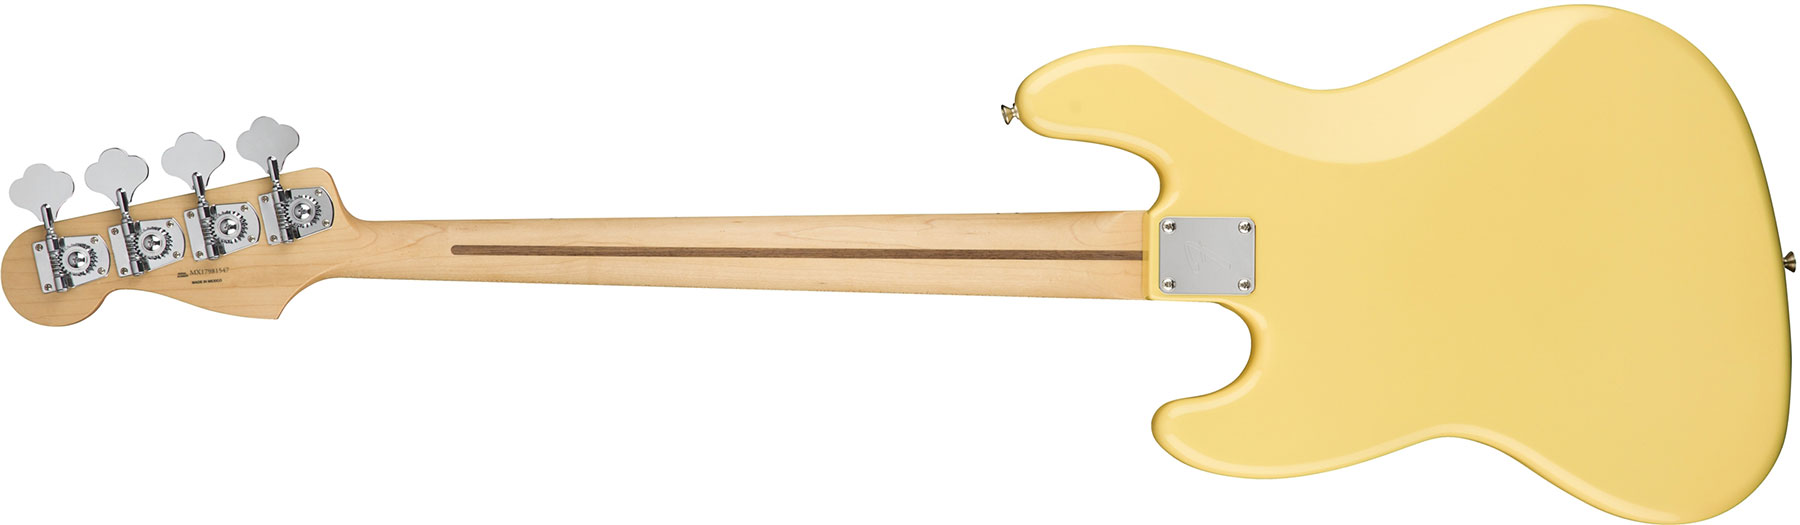 Fender Jazz Bass Player Mex Mn - Buttercream - Solid body elektrische bas - Variation 1